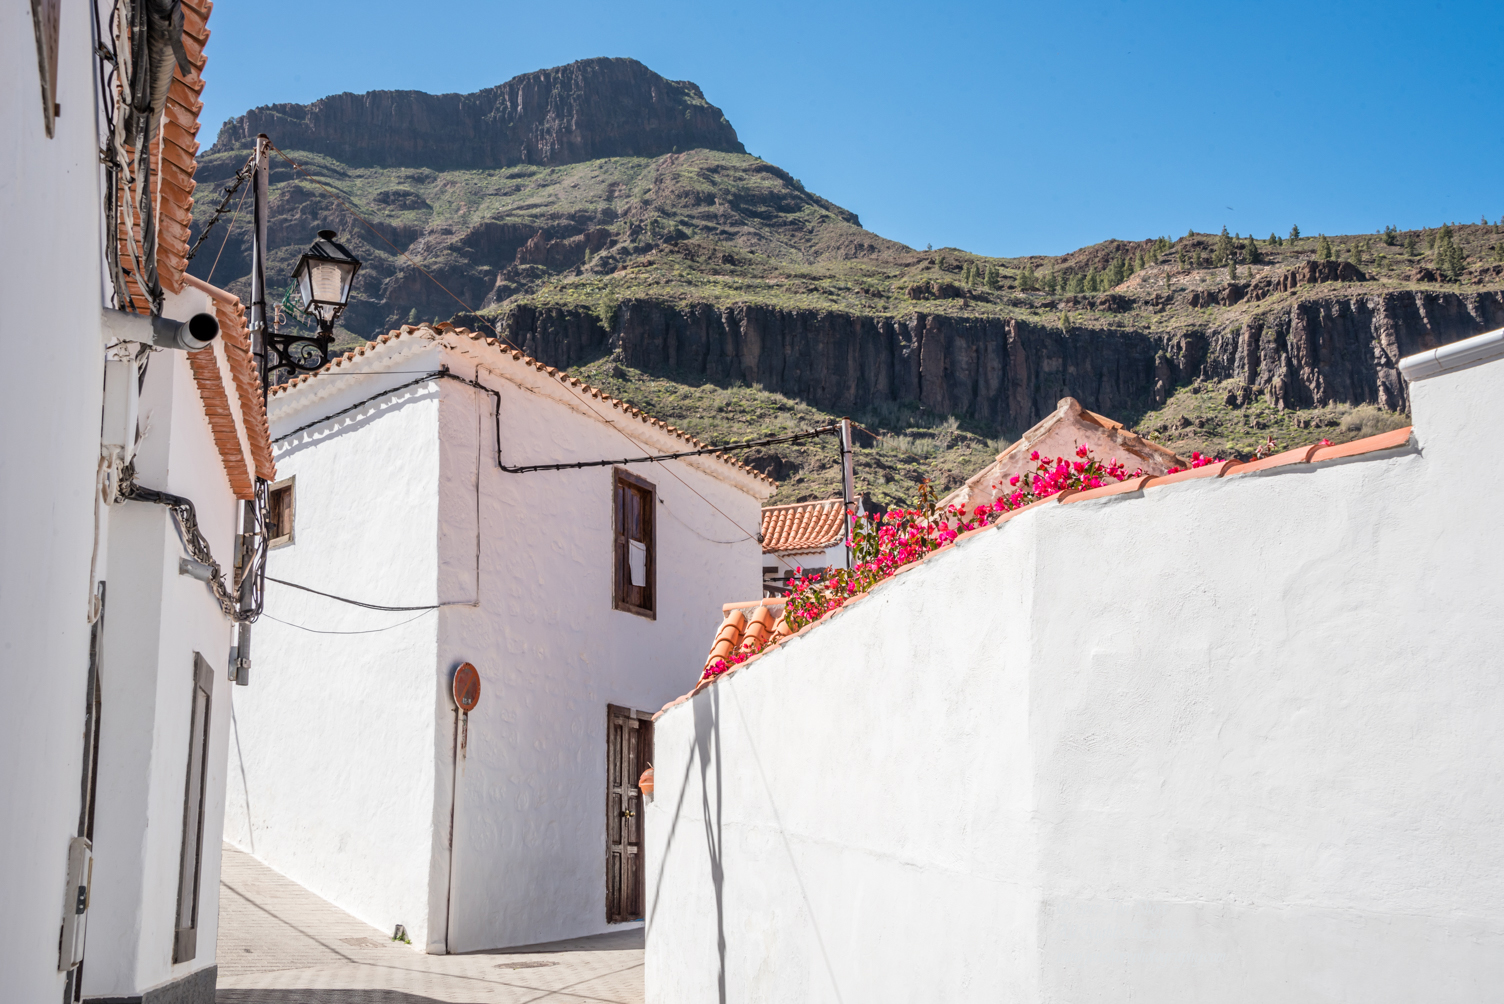 Fataga, Gran Canaria, Spain. Nikkor 50mm